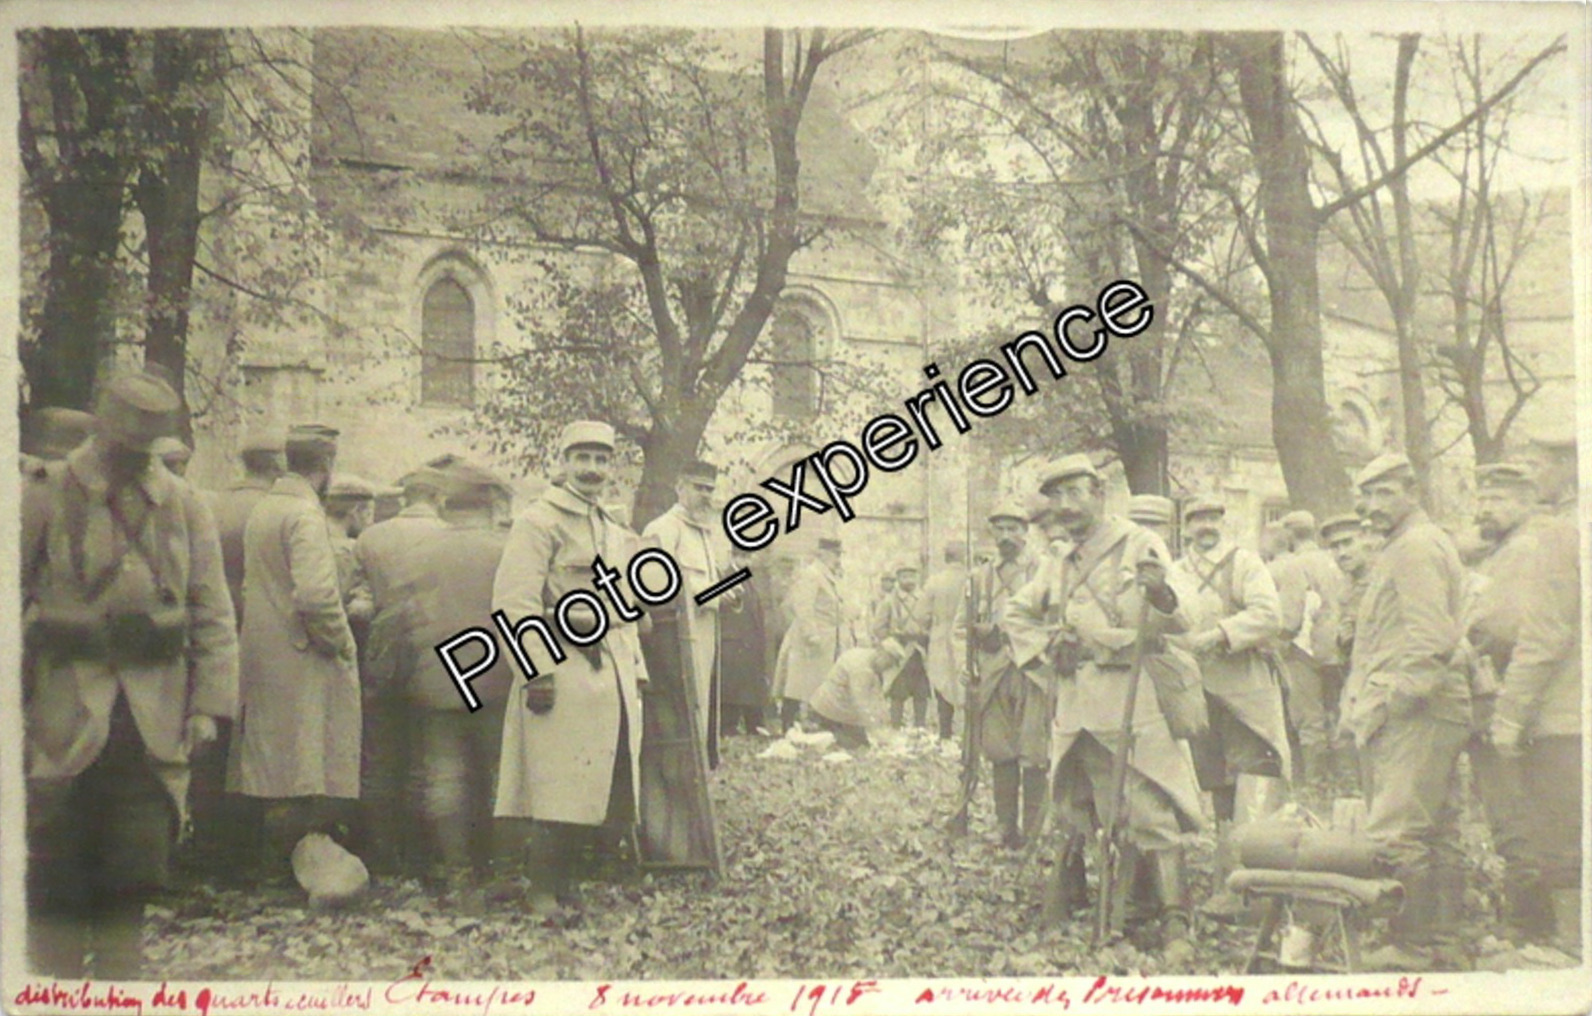 Arrivée des prisonniers allemands à Etampes en novembre 1915